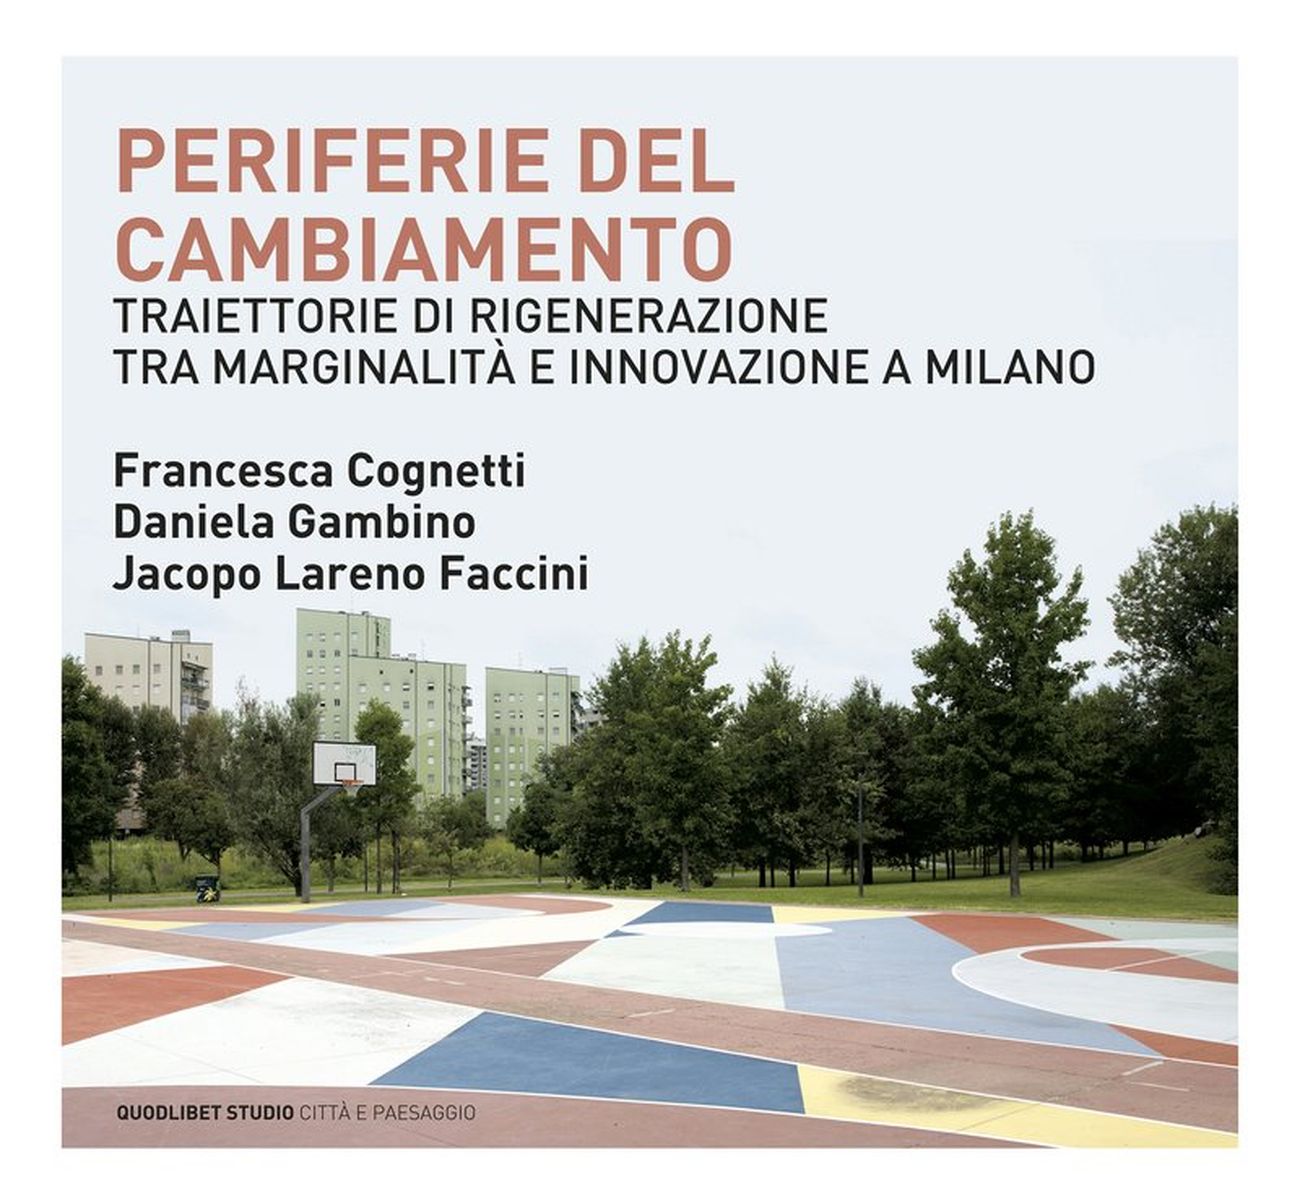 Francesca Cognetti, Daniela Gambino, Jacopo Lareno Faccini – Periferie del cambiamento (Quodlibet, Macerata 2020)